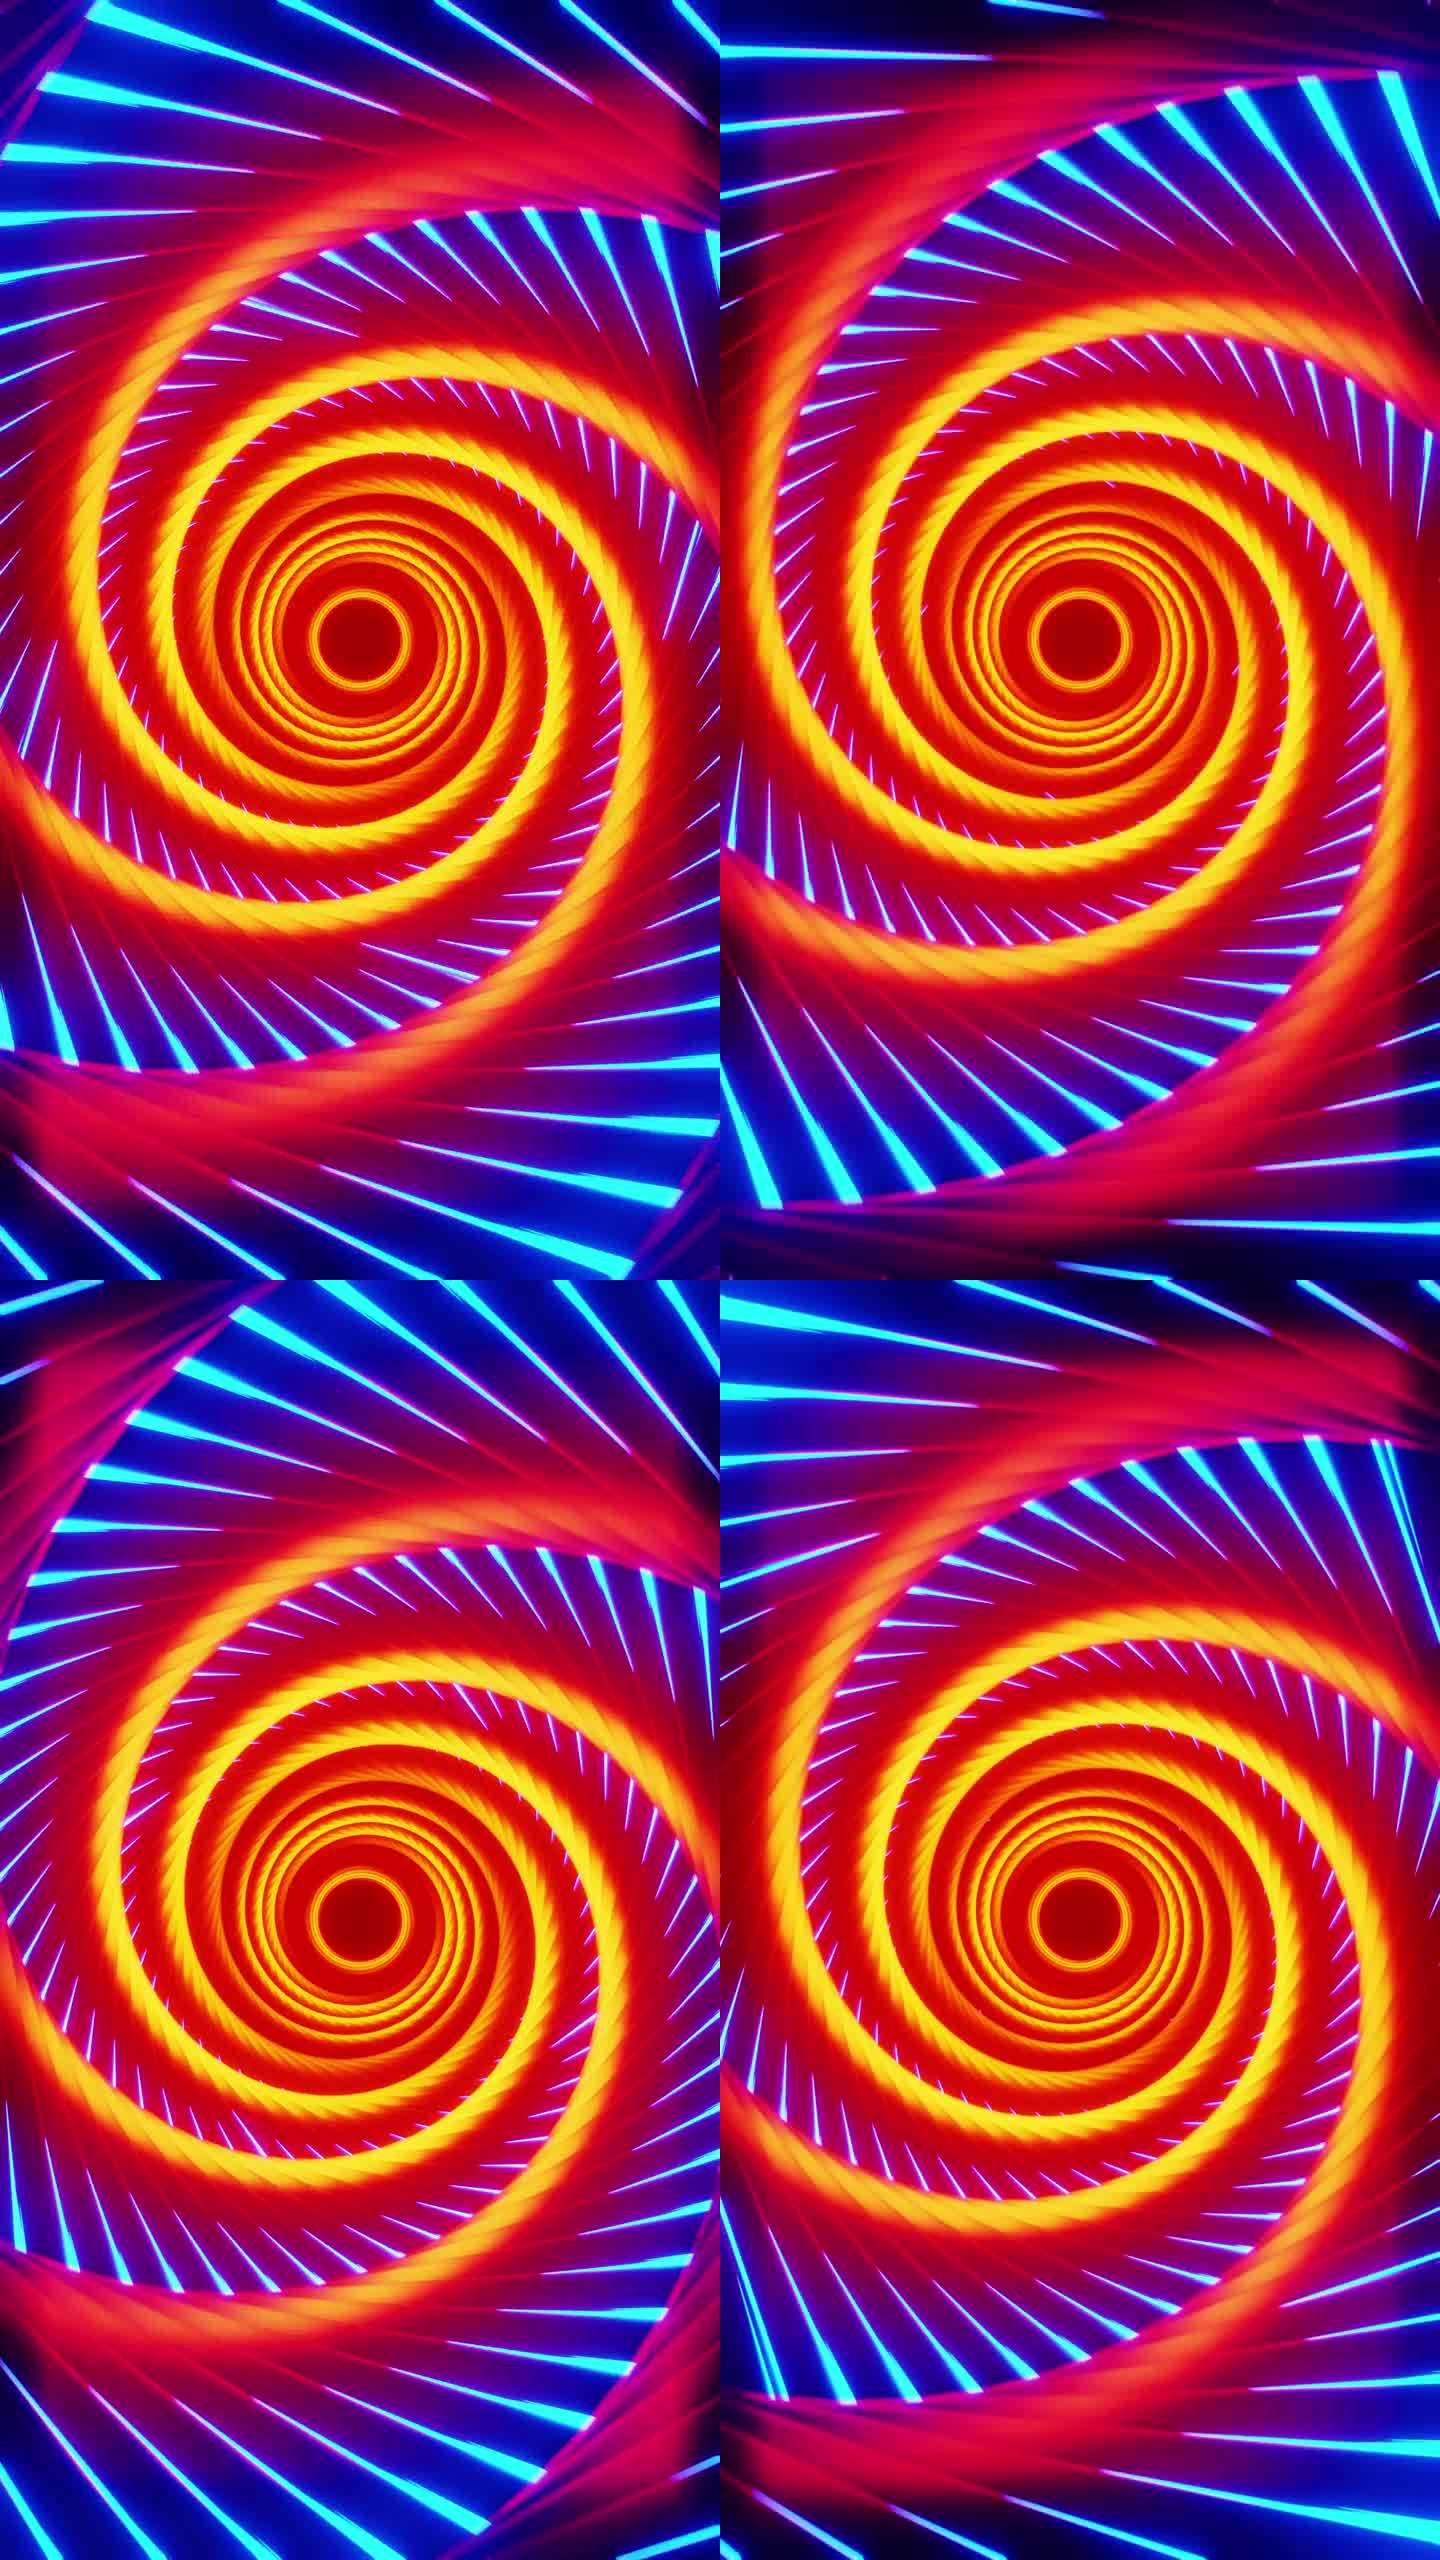 隧道以橙色漩涡和蓝色条纹的形式出现。循环动画